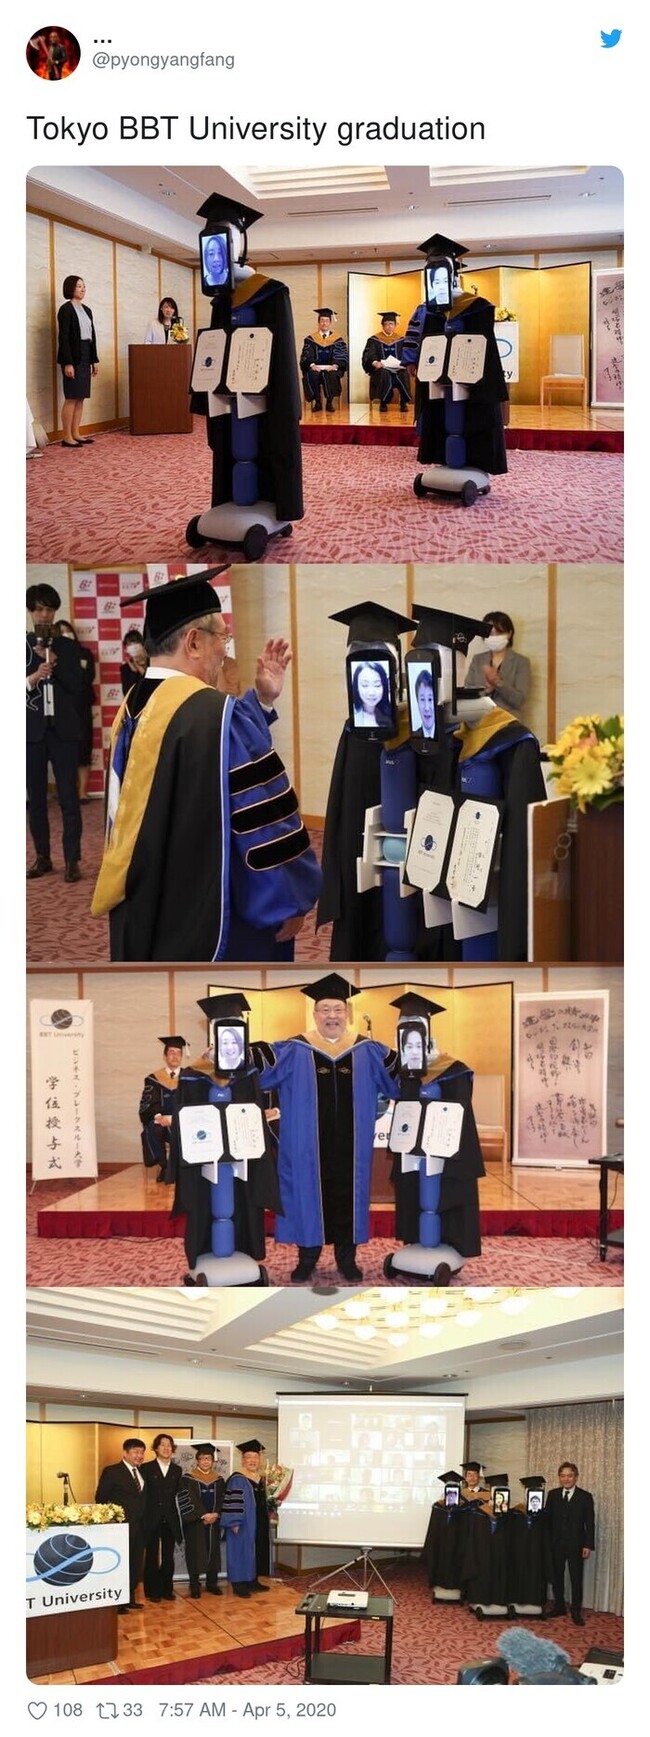 10984 - Estudiantes japoneses son reemplazados por robots en una ceremonia de graduación durante la pandemia